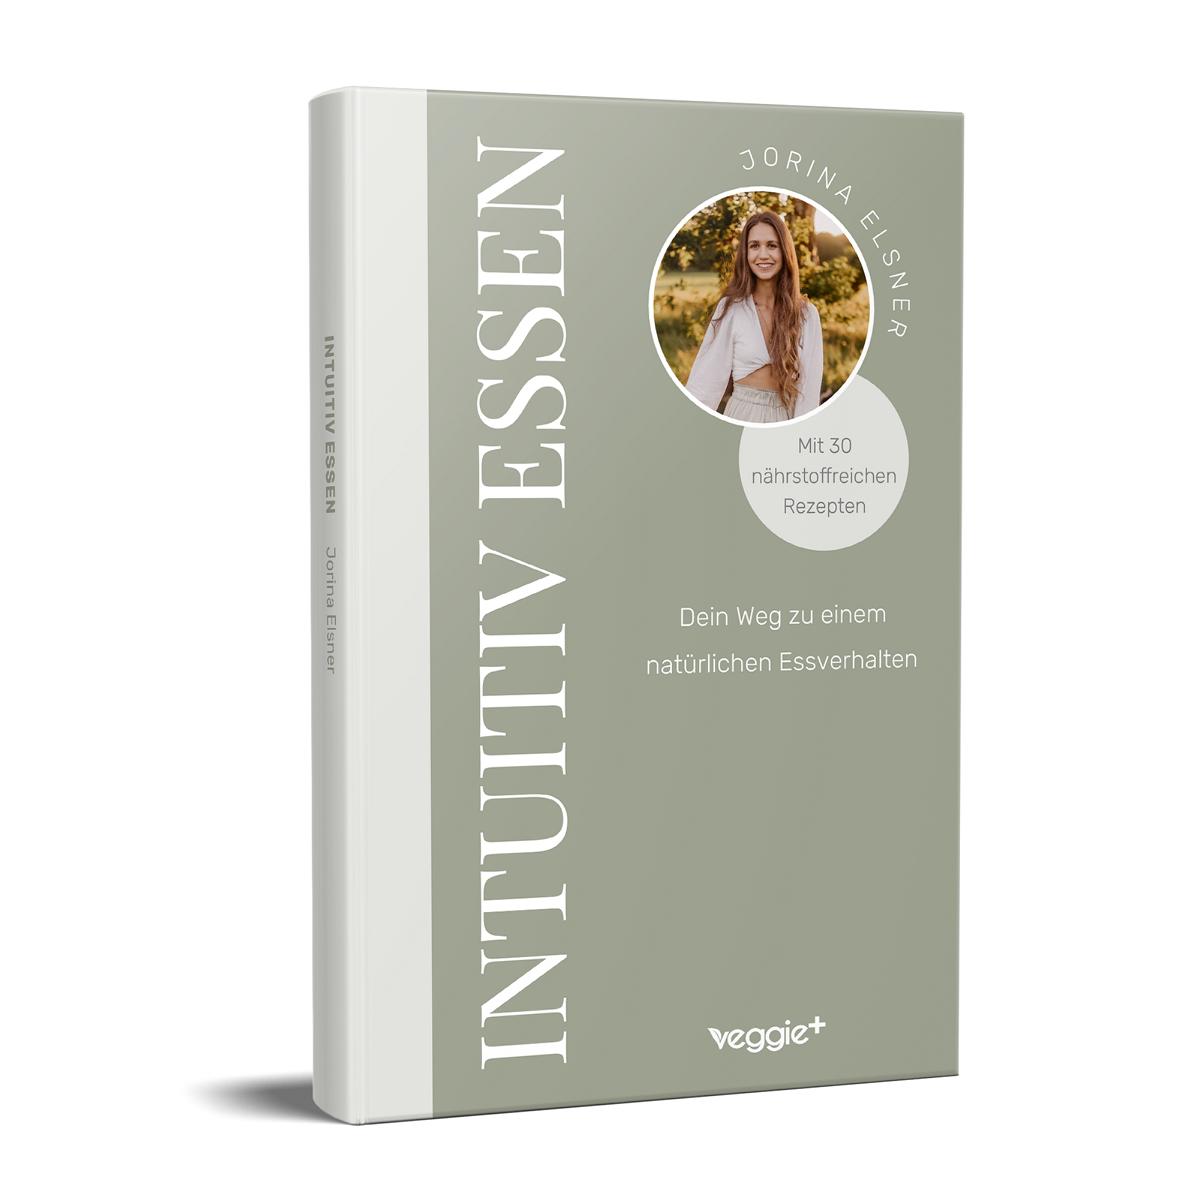 Intuitiv essen: Dein Weg zu einem natürlichen Essverhalten (Der große Ratgeber für eine intuitive Ernährung mit 30 nährstoffreichen Rezepten) von Jorina Elsner im veggie + Verlag